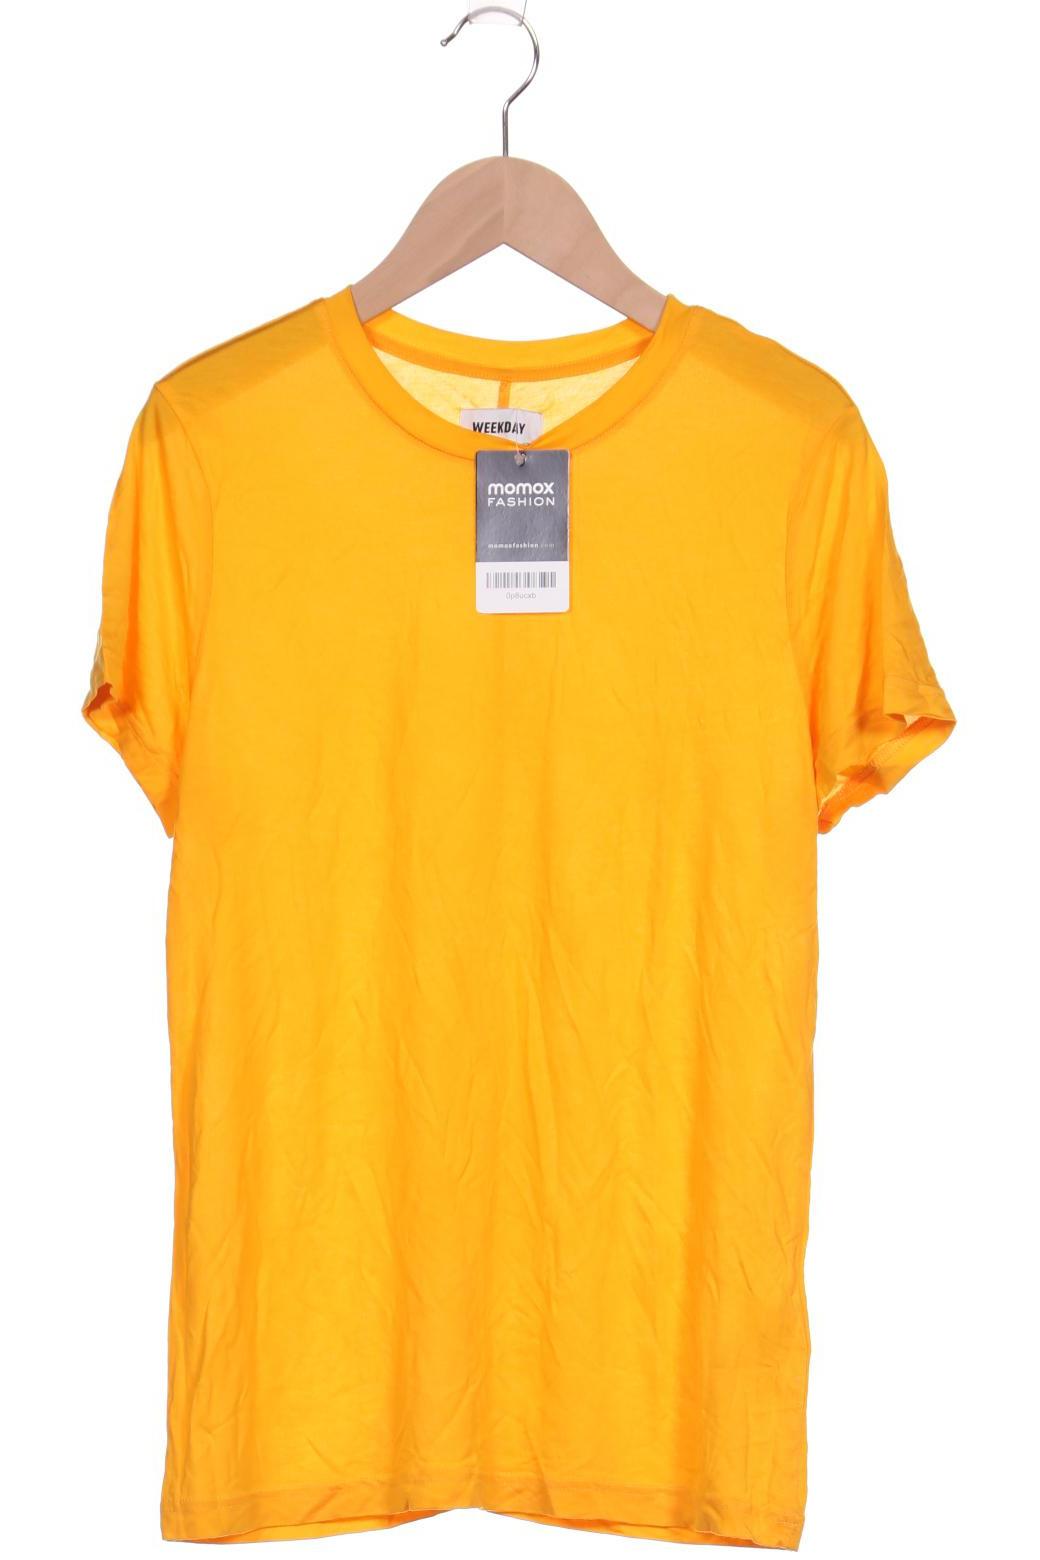 Weekday Damen T-Shirt, orange von Weekday